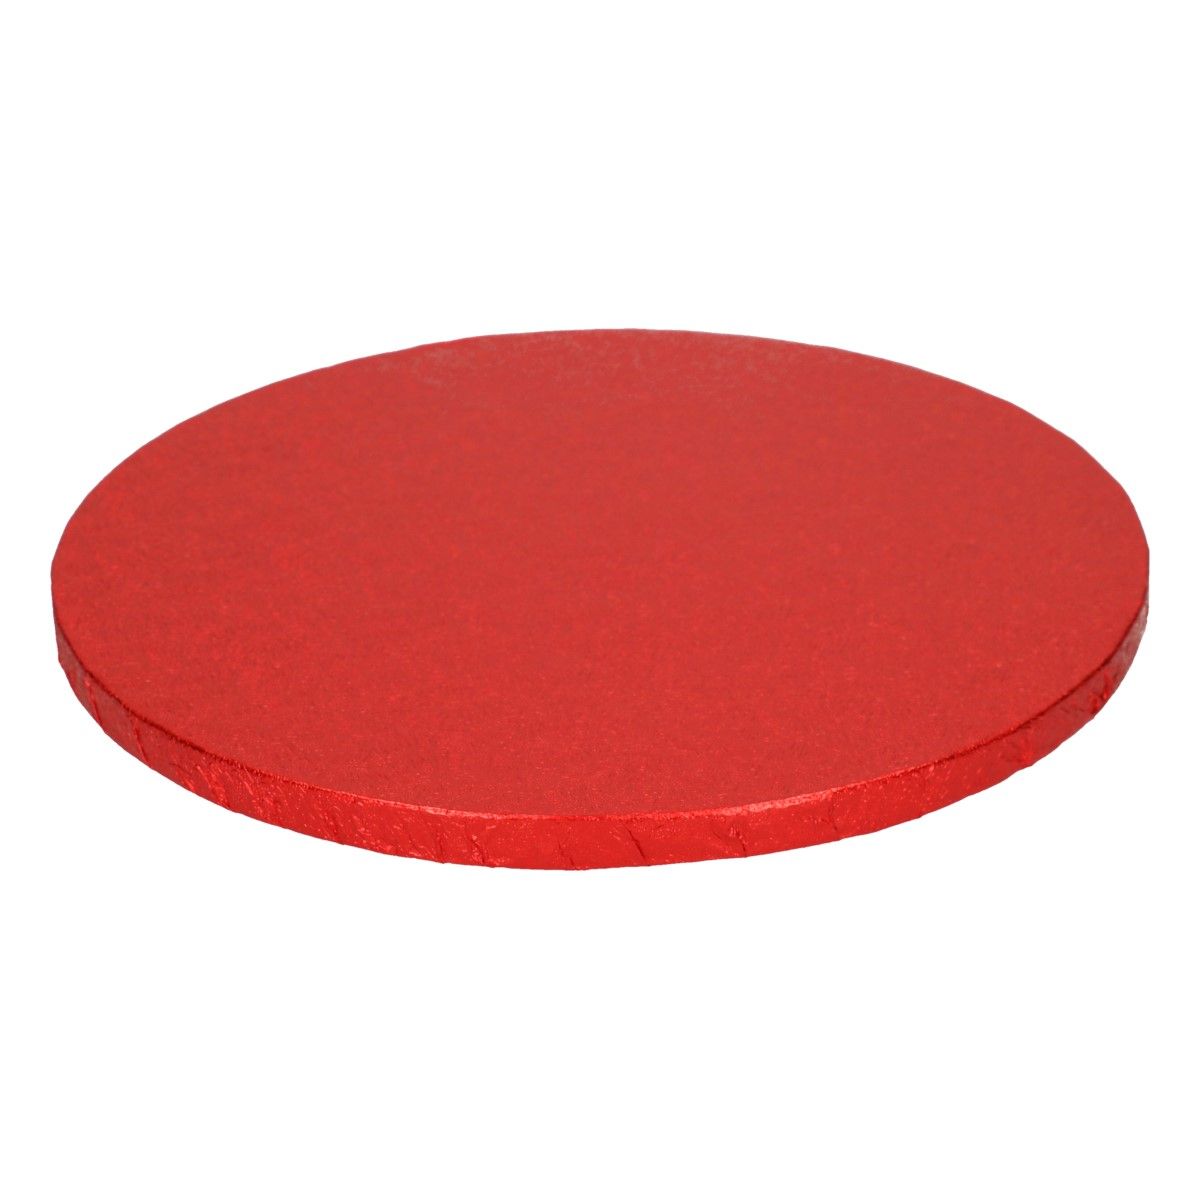 Podnos červený (Red) hrubý O 30,5 cm, FunCakes F80930